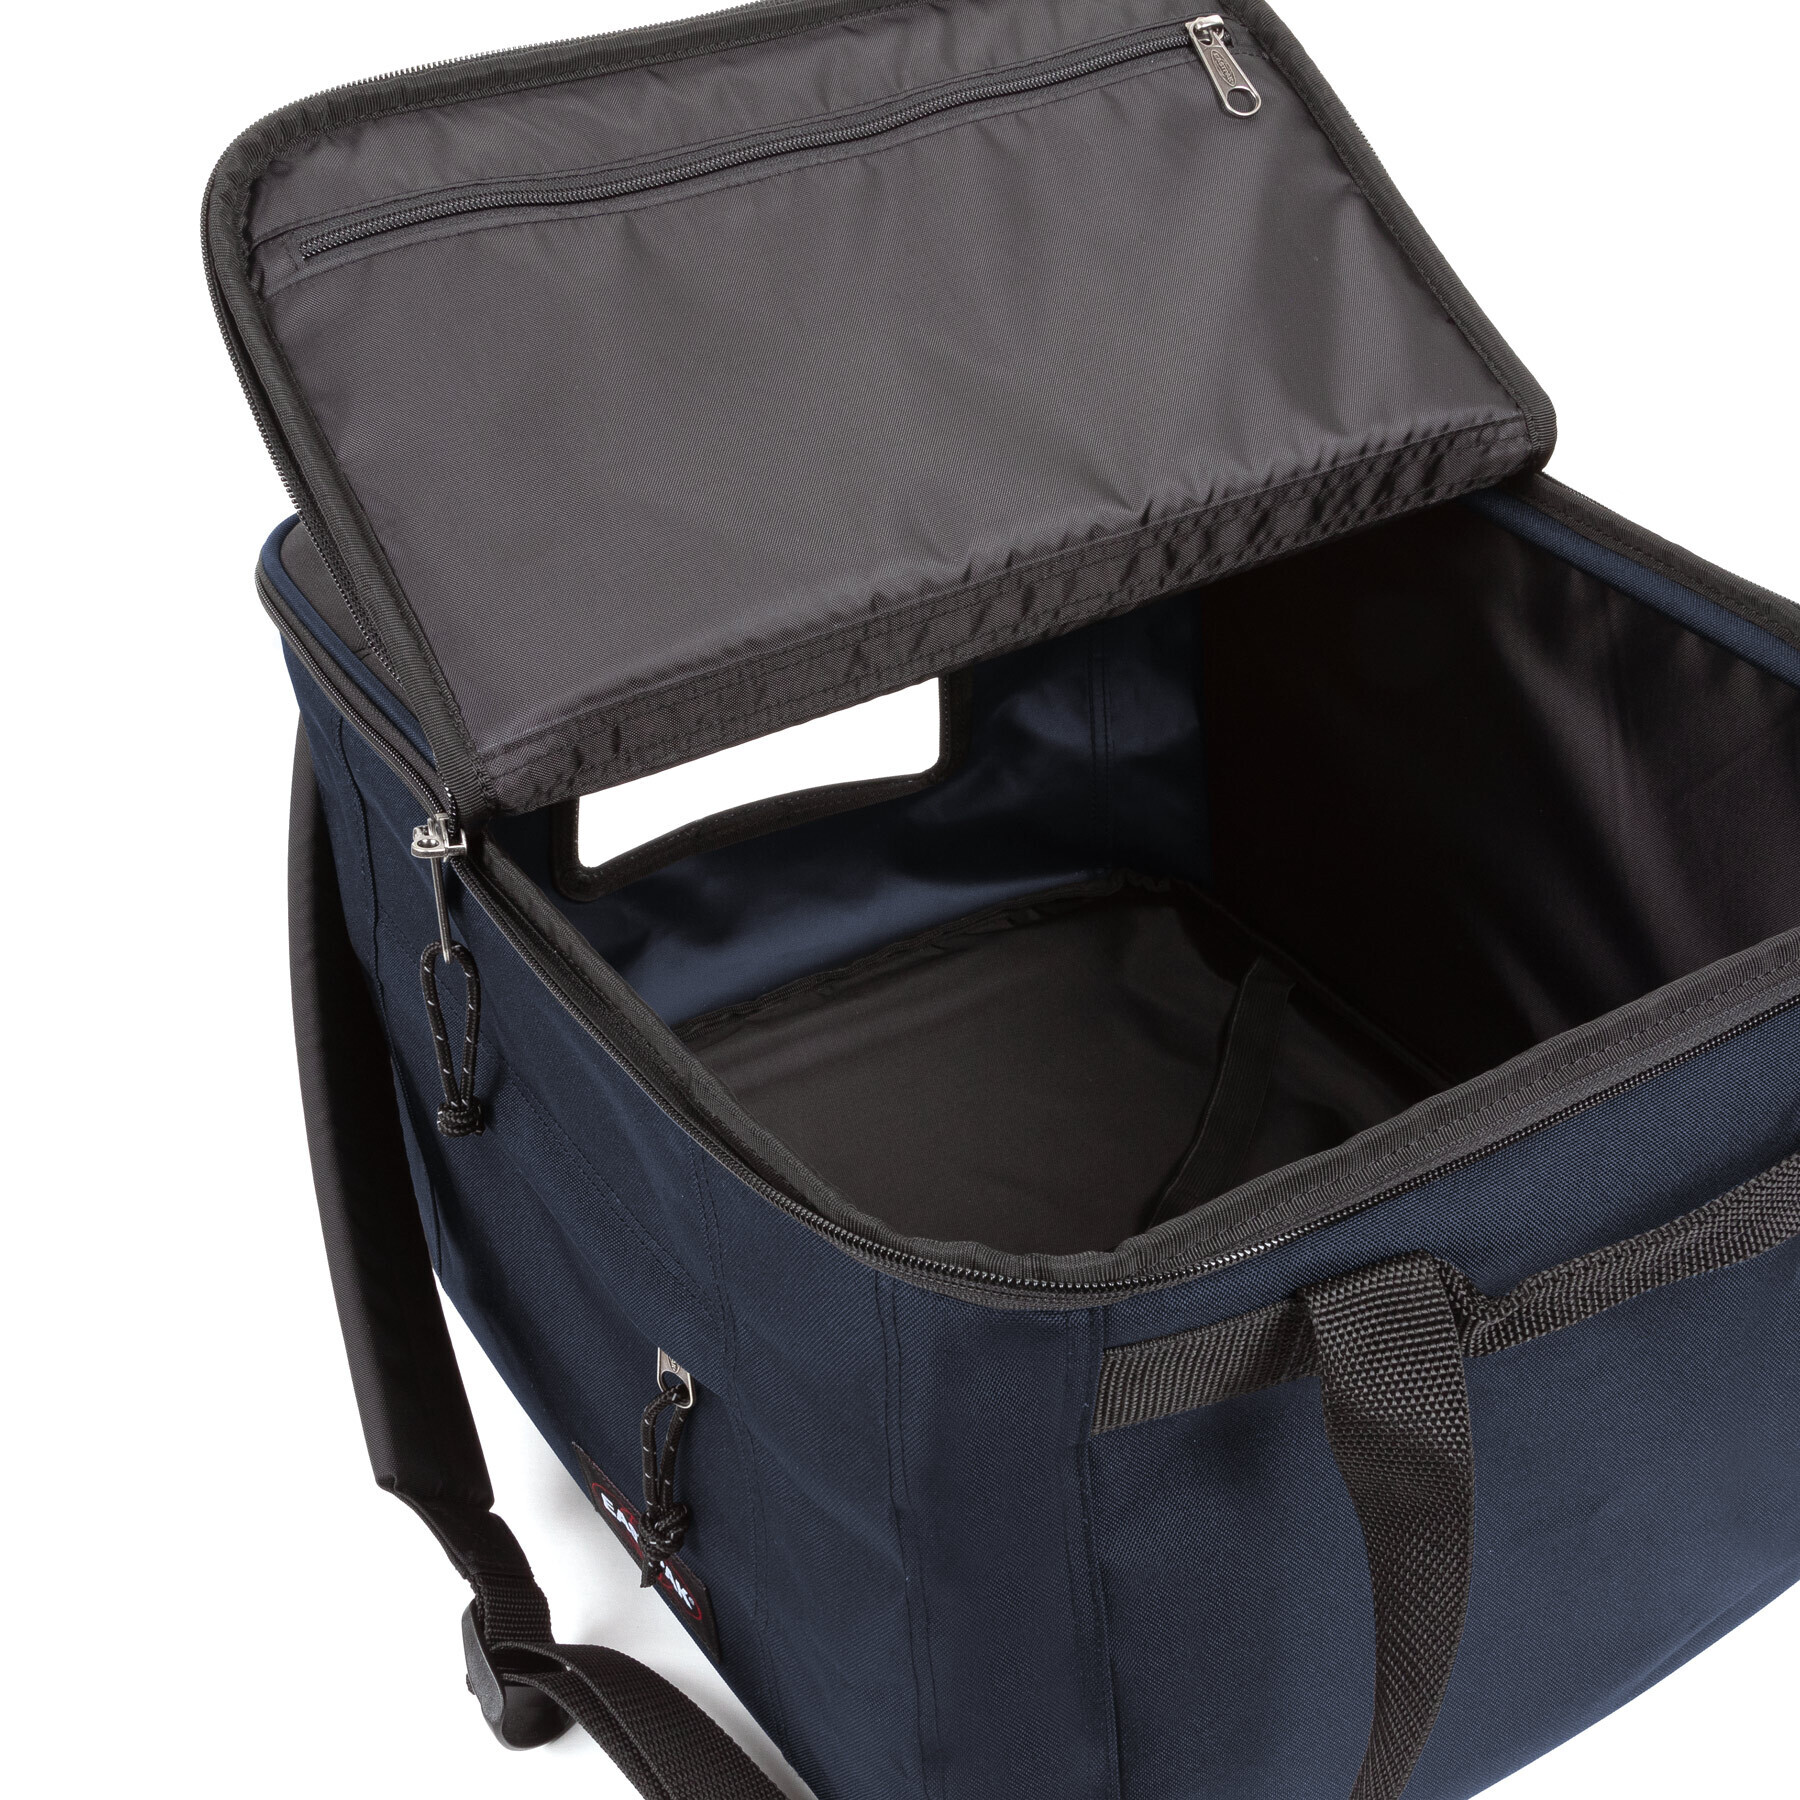 Backpack Eastpak Travelbox L